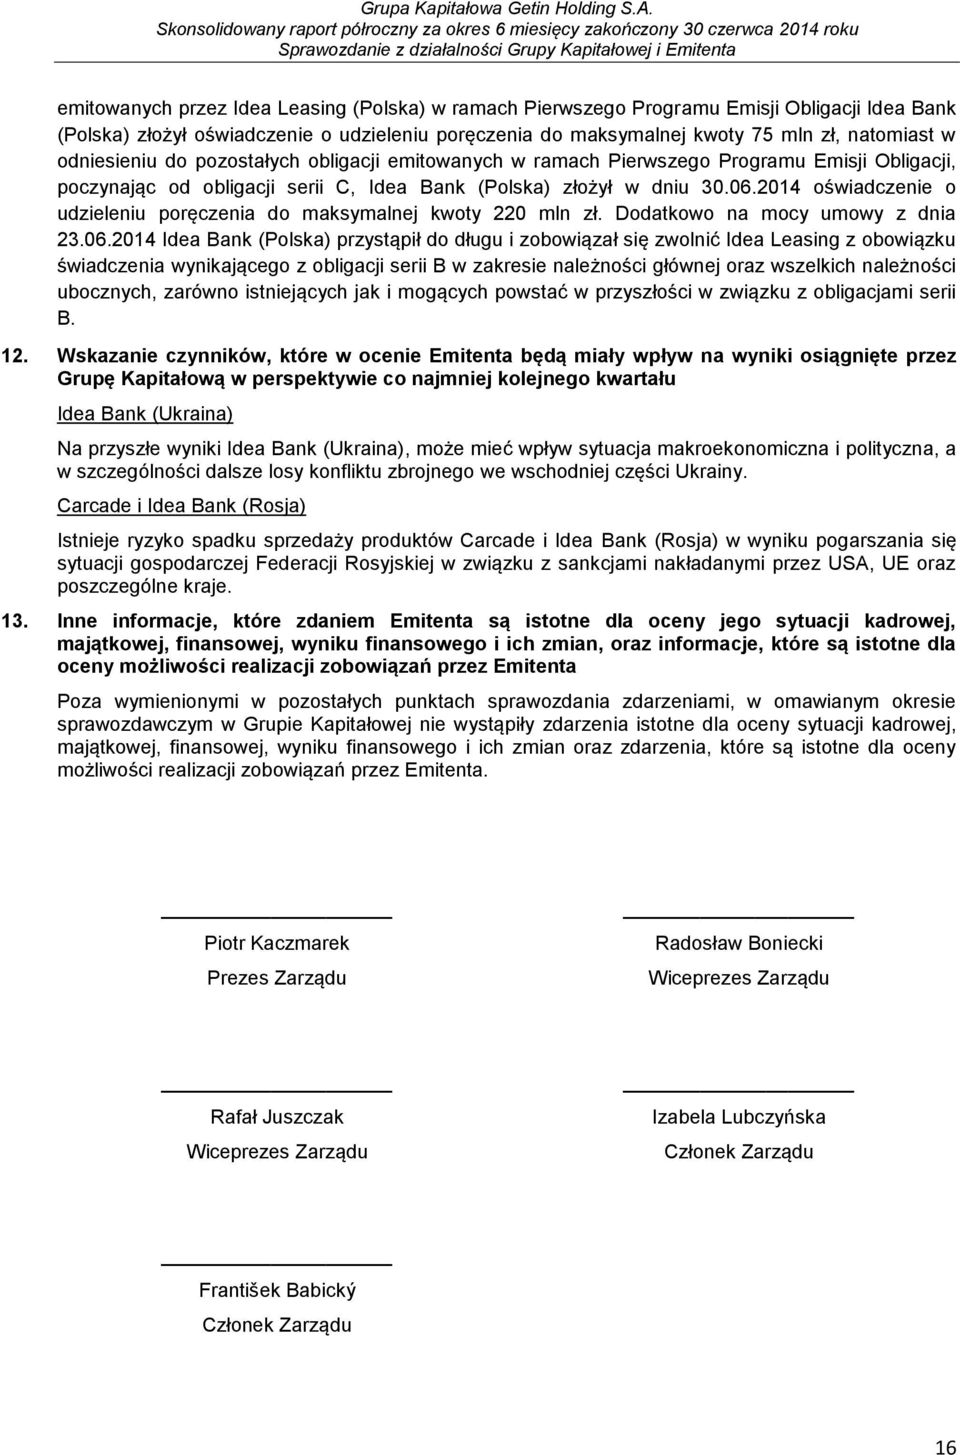 2014 oświadczenie o udzieleniu poręczenia do maksymalnej kwoty 220 mln zł. Dodatkowo na mocy umowy z dnia 23.06.